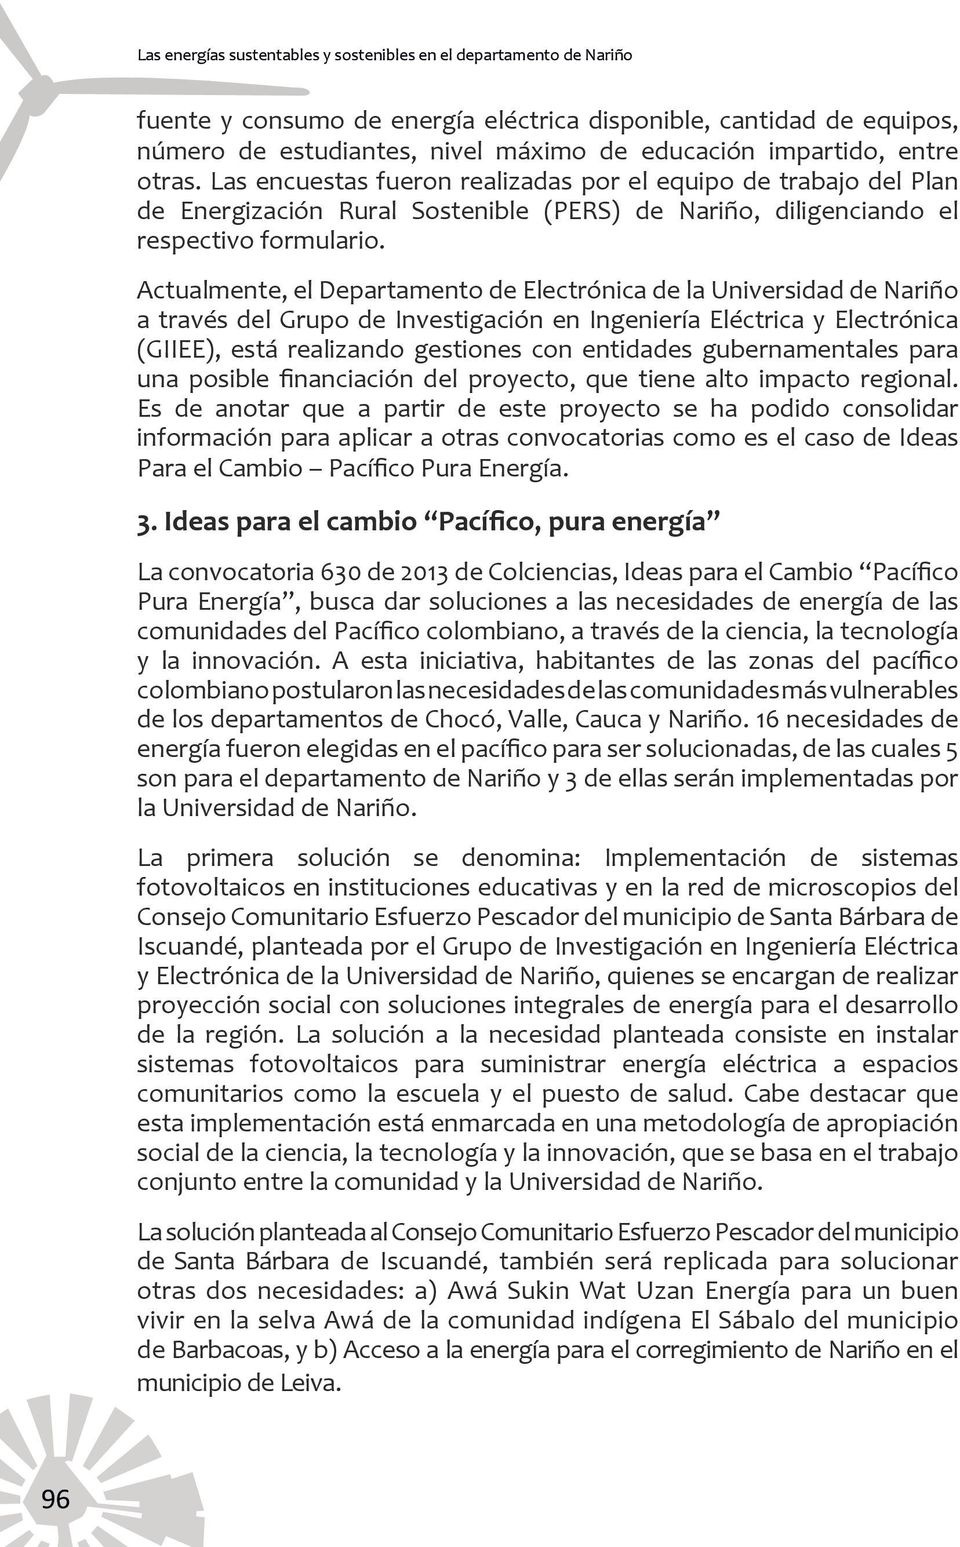 Actualmente, el Departamento de Electrónica de la Universidad de Nariño a través del Grupo de Investigación en Ingeniería Eléctrica y Electrónica (GIIEE), está realizando gestiones con entidades